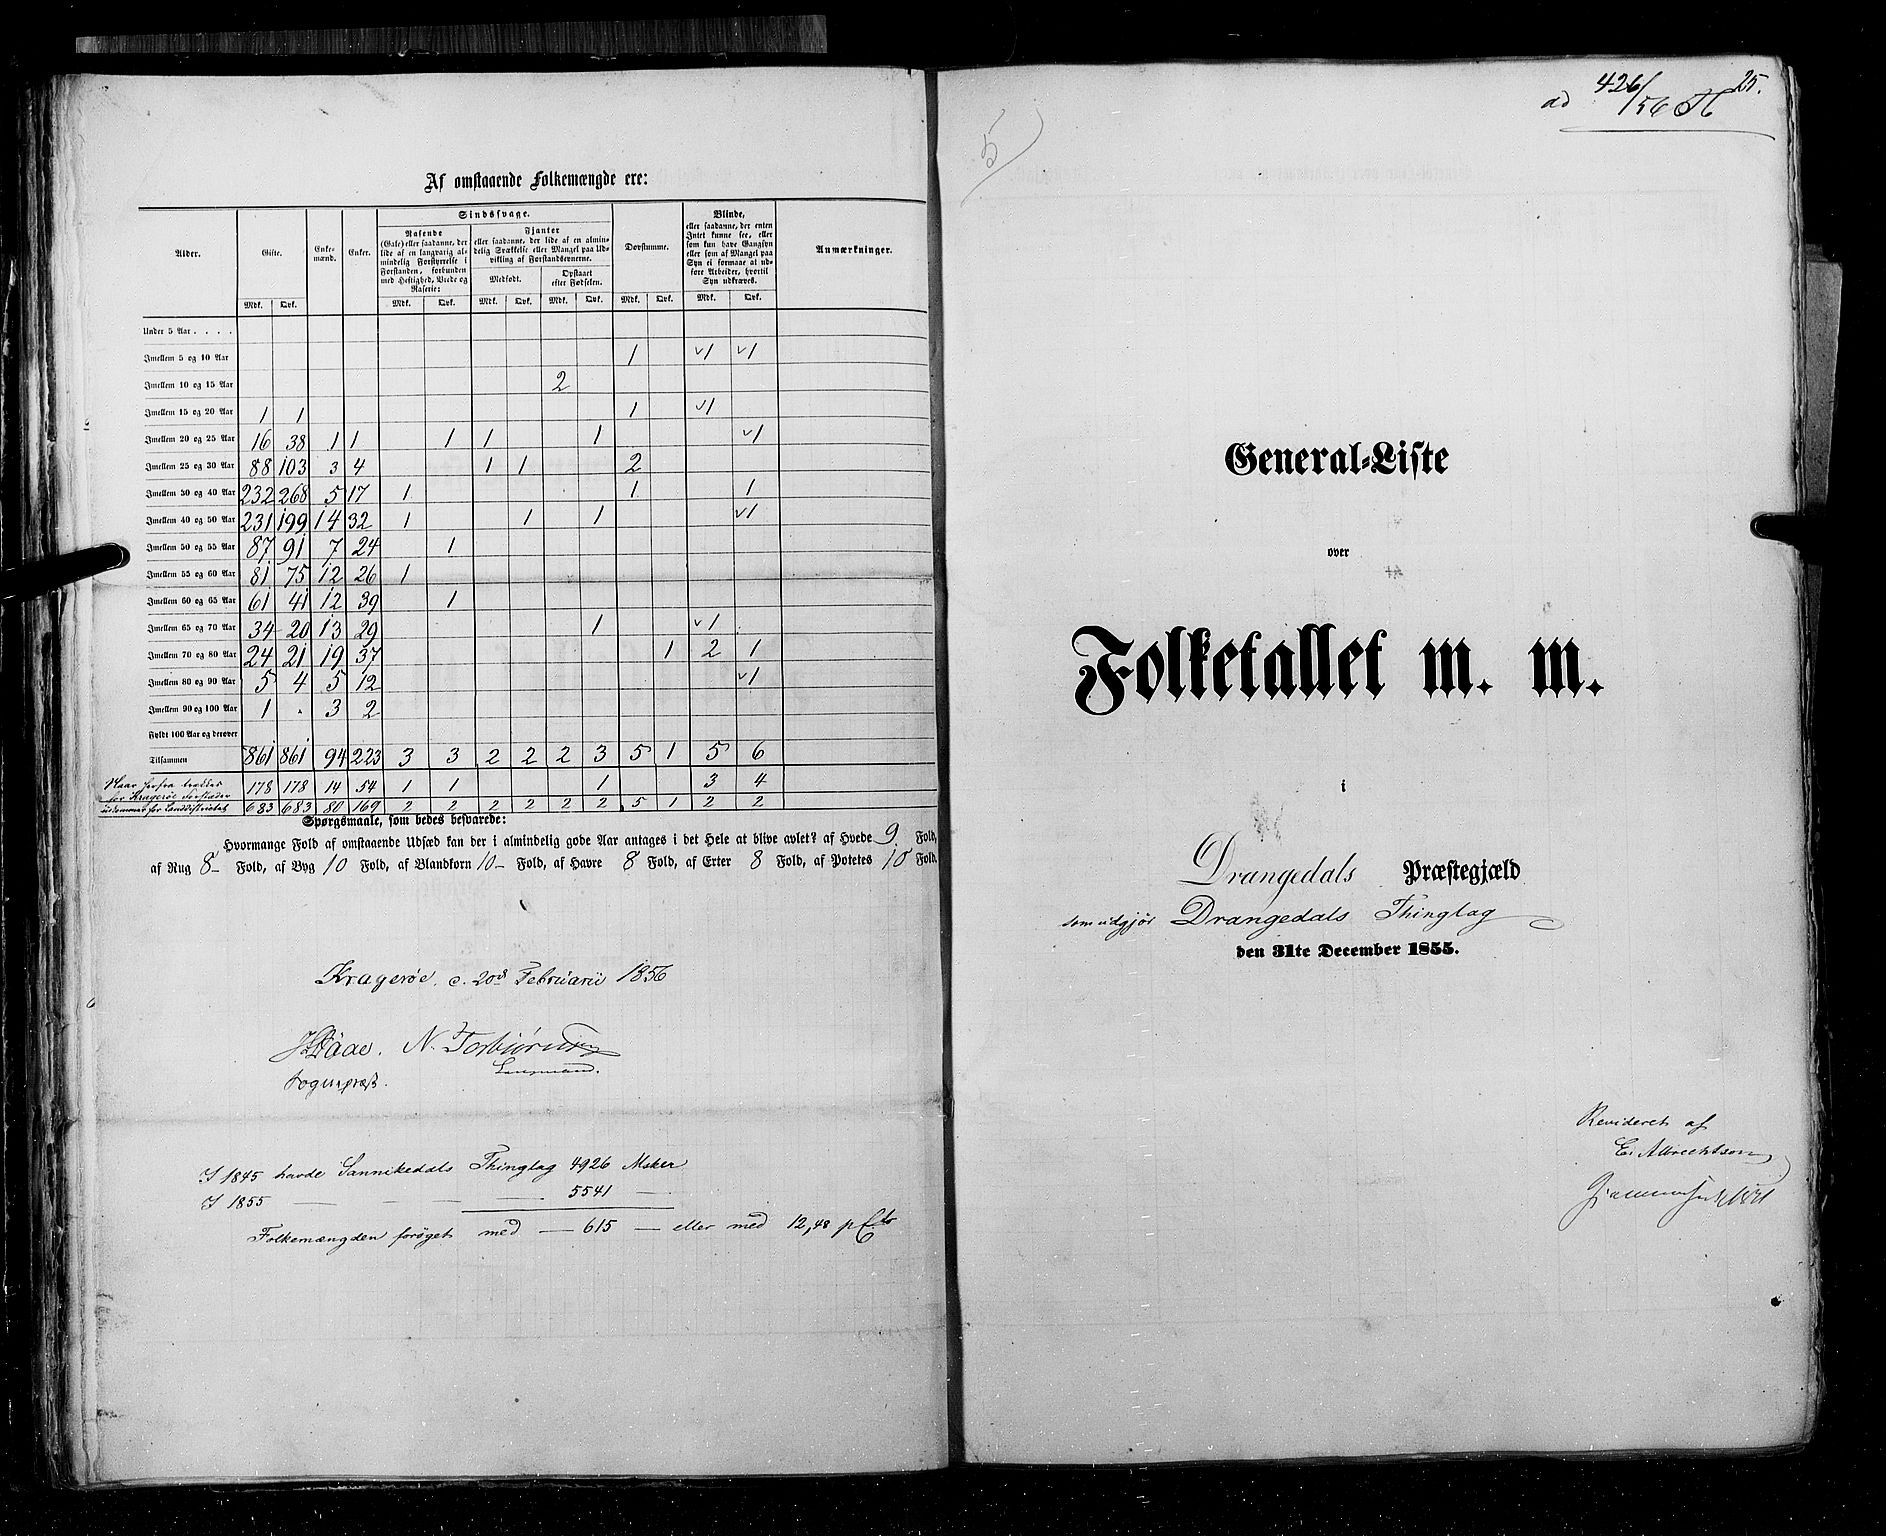 RA, Census 1855, vol. 3: Bratsberg amt, Nedenes amt og Lister og Mandal amt, 1855, p. 25